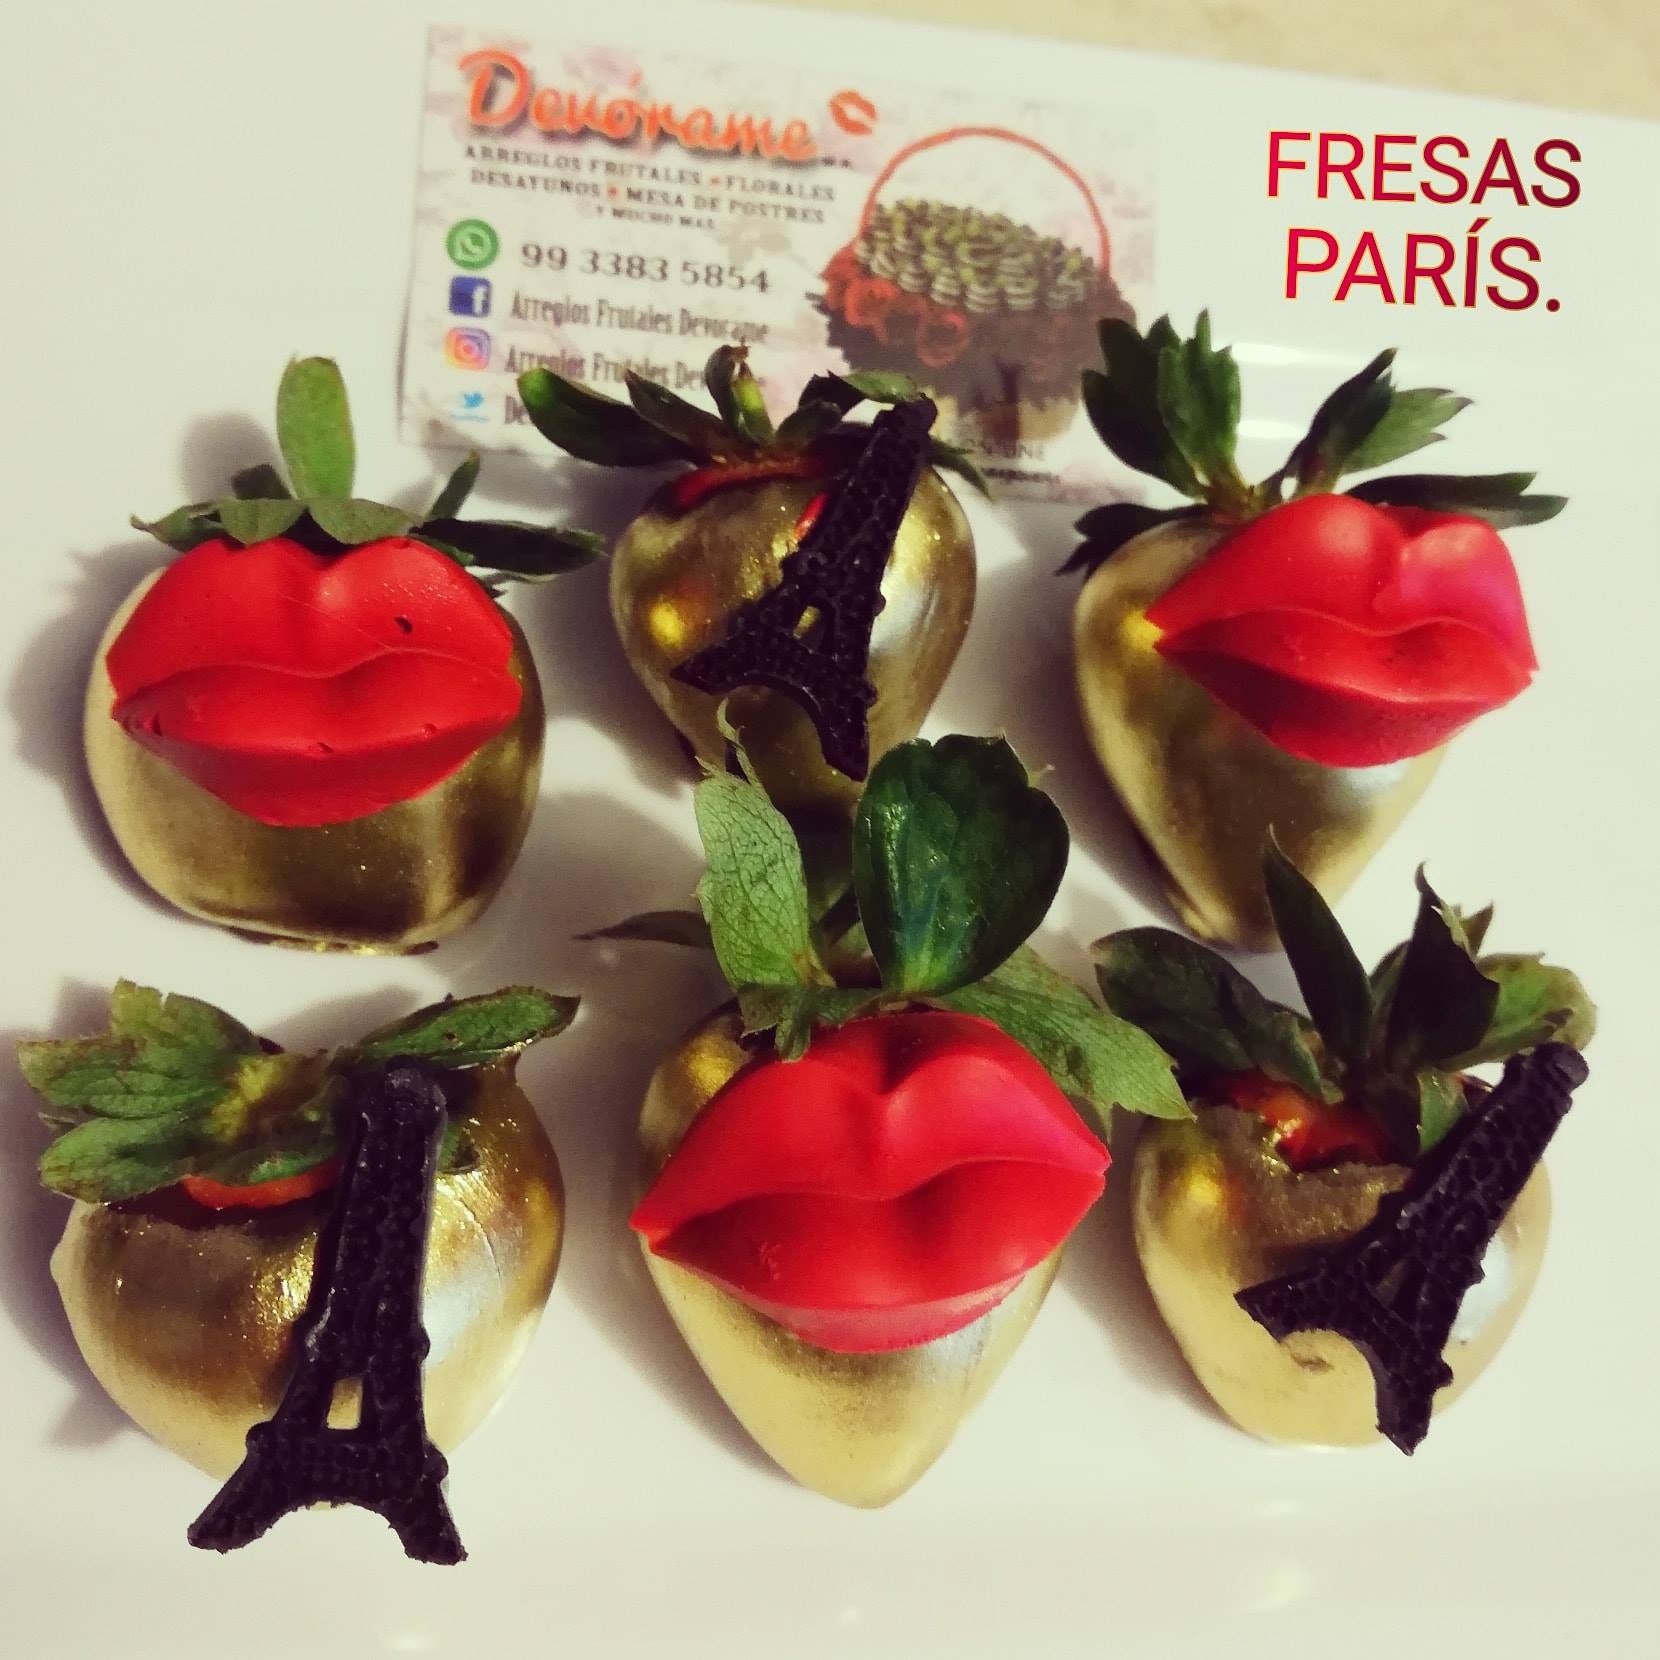 Arreglo frutal Fresas París devorame